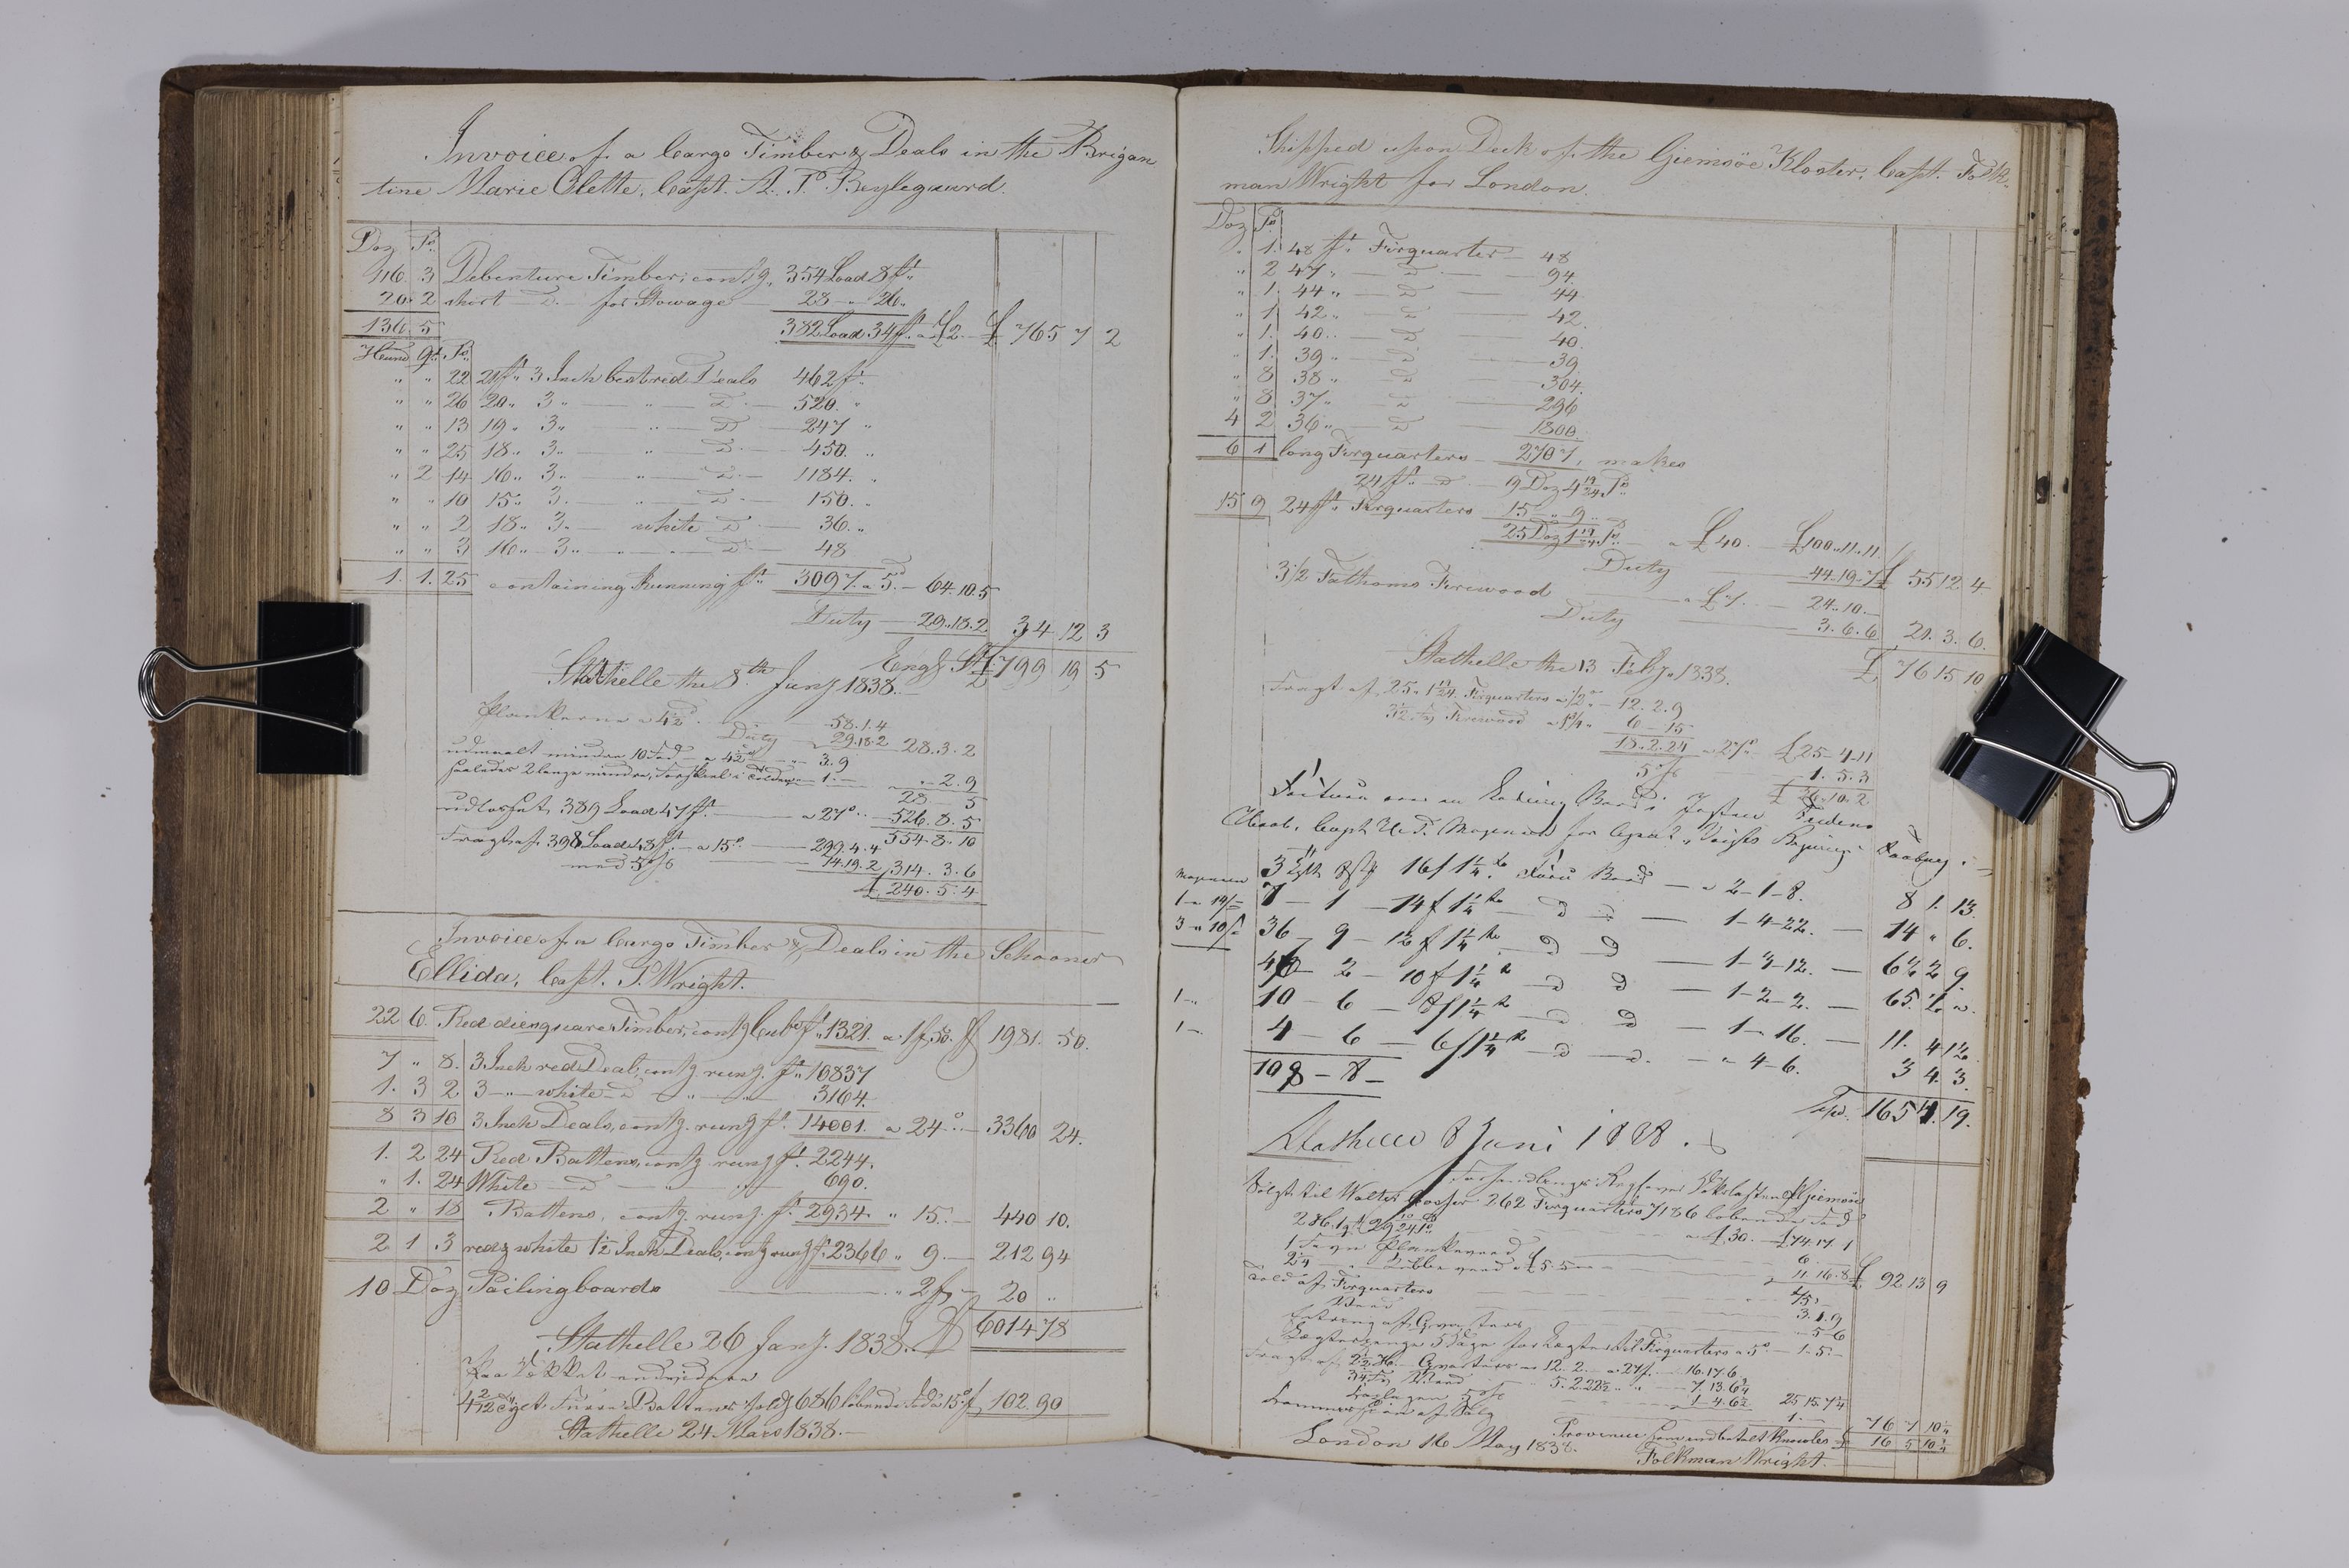 , Priscourant-tømmerpriser, 1834-38, 1834-1838, s. 319